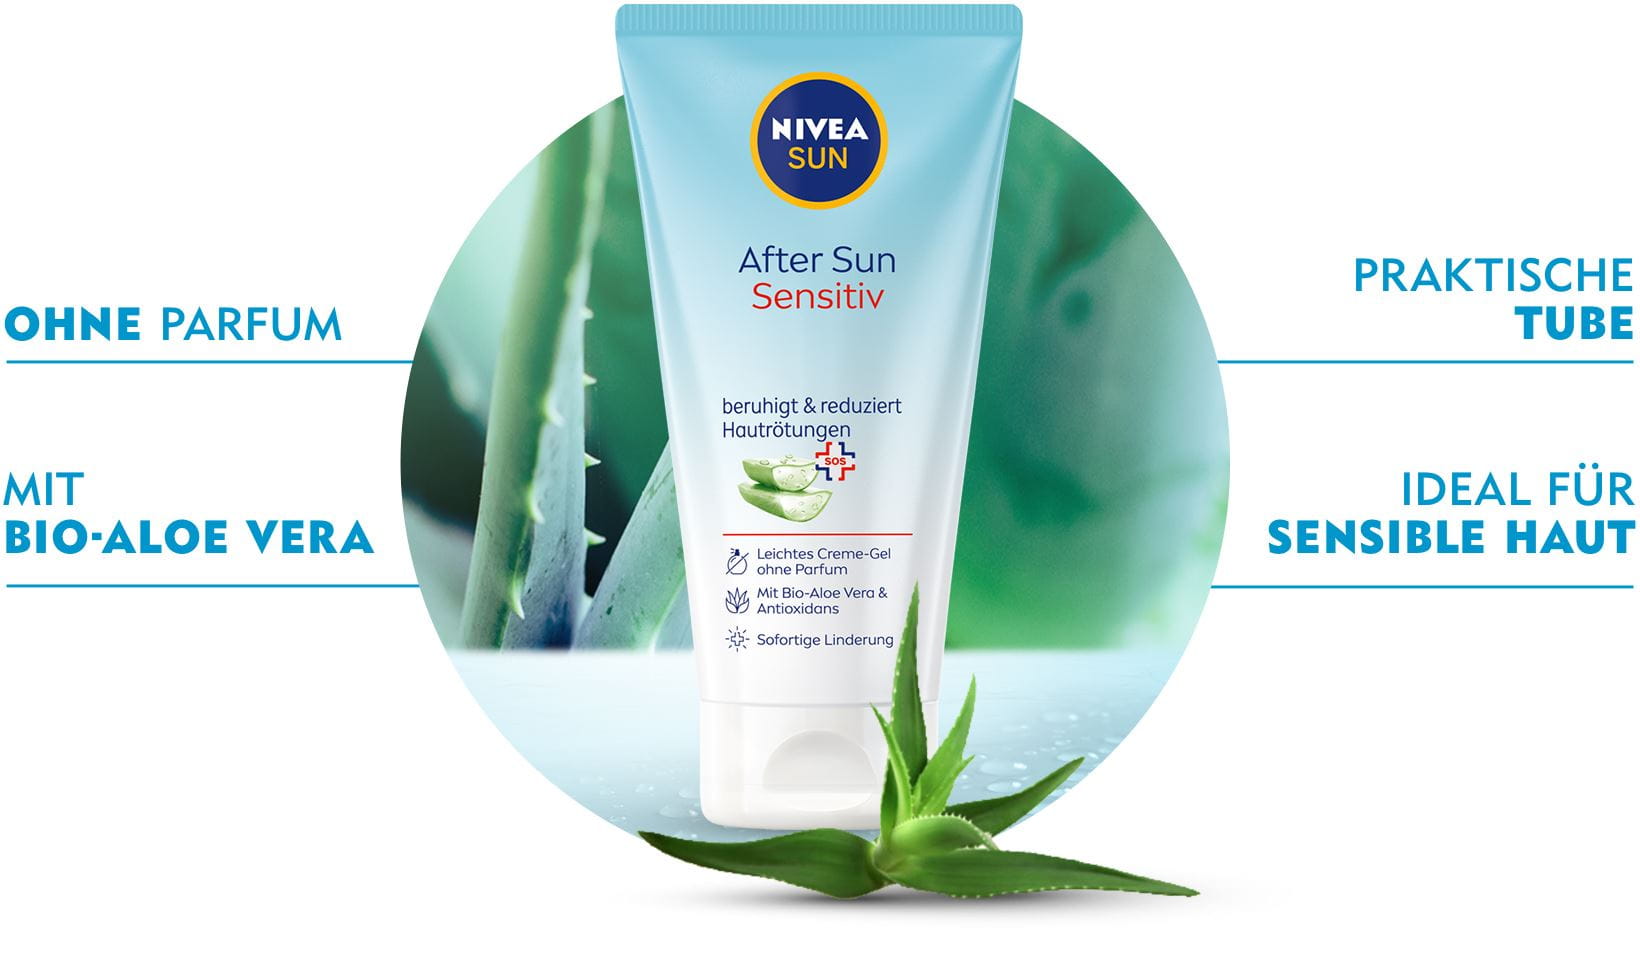 NIVEA After Sun – Sensitiv Produkt